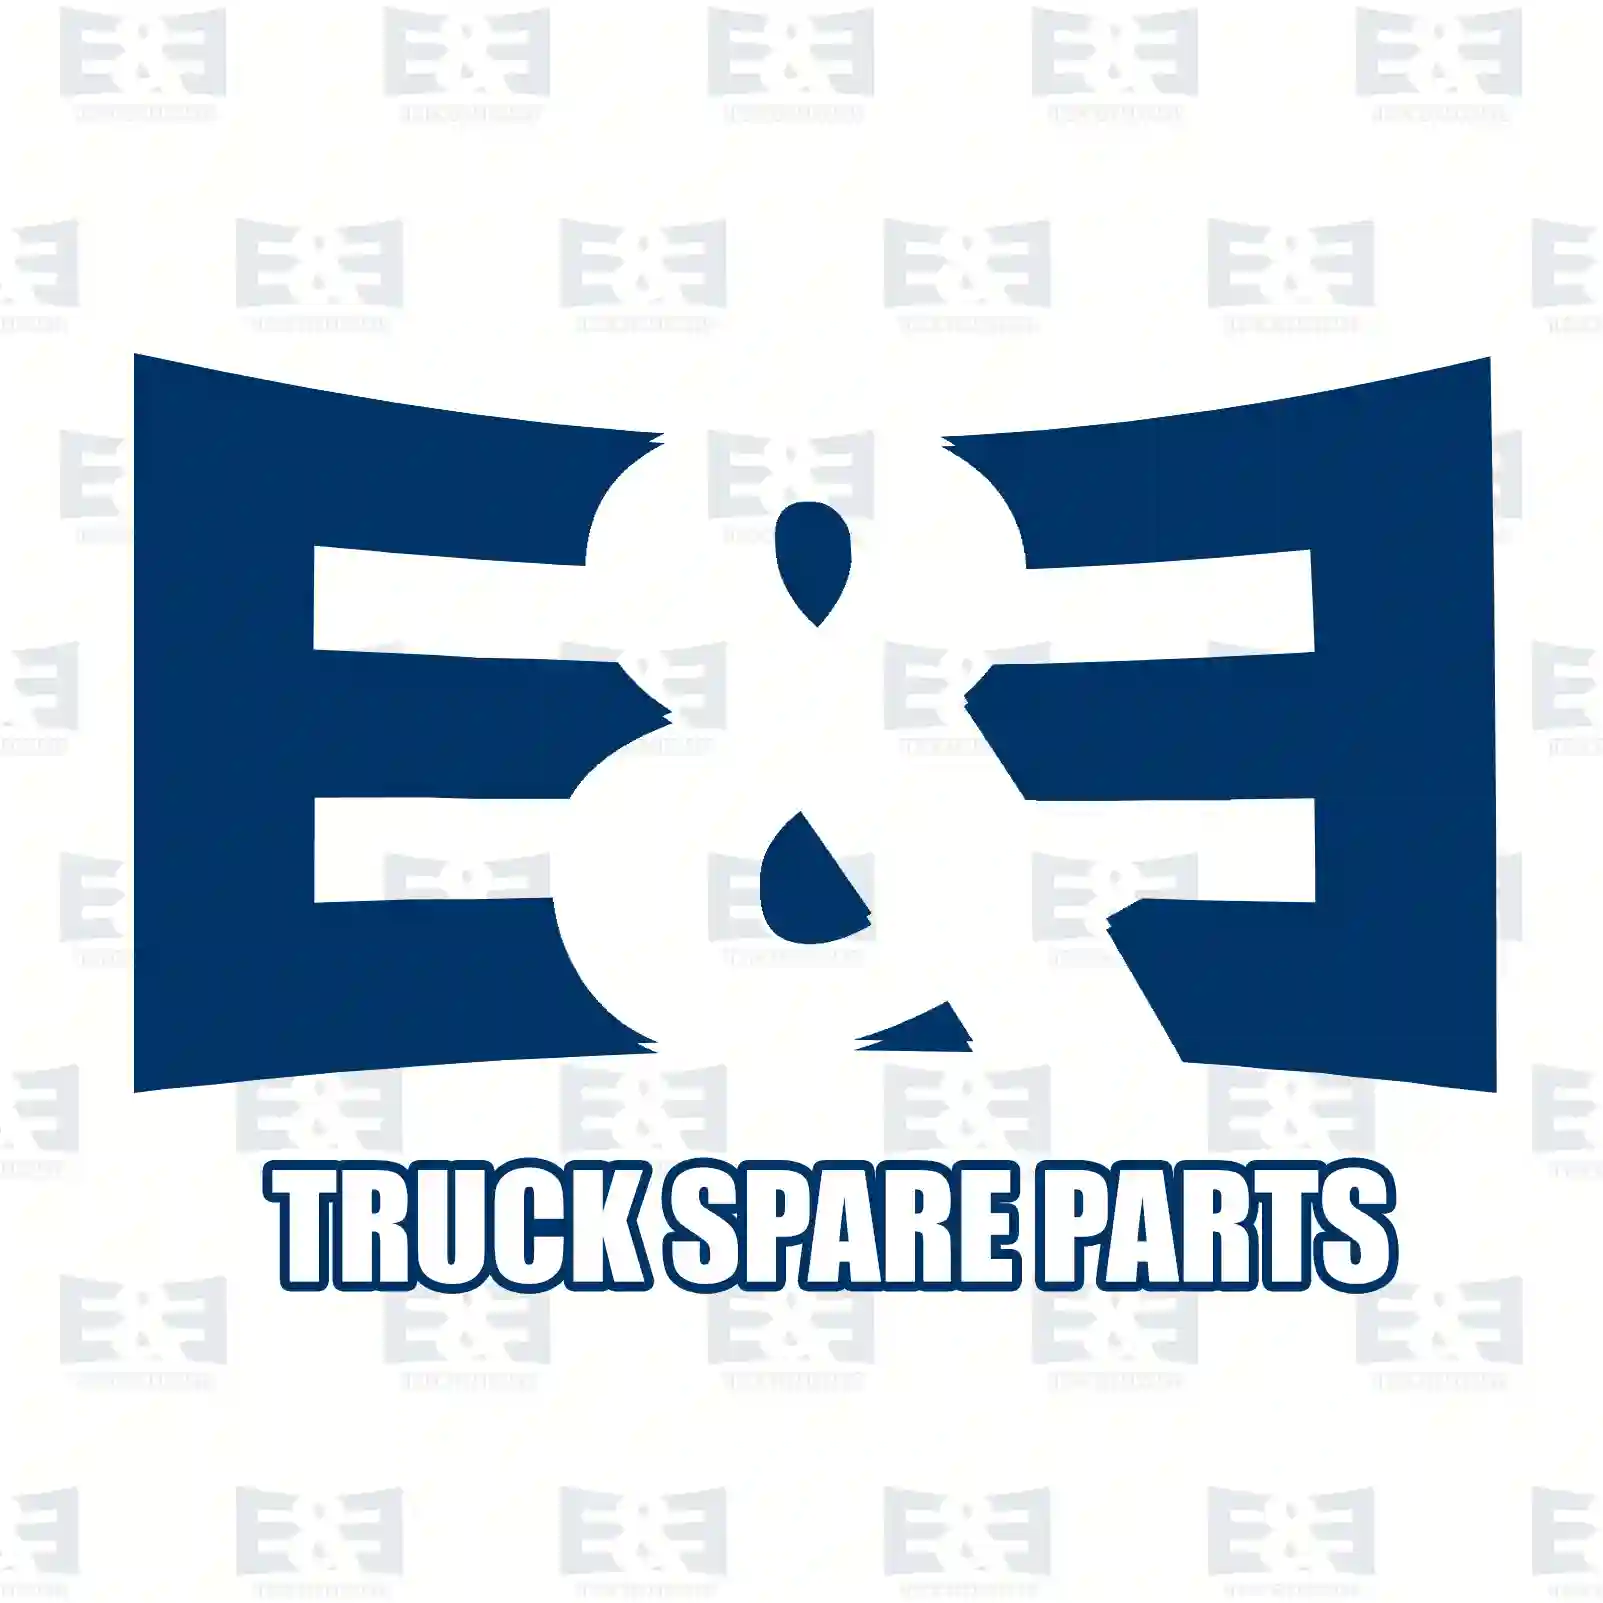 Brake disc, 2E2296284, 2E0615601, 68013765AA, 68013765AA, 9064230112, 2E0615601, 2E0615601, 2E0615601, , , ||  2E2296284 E&E Truck Spare Parts | Truck Spare Parts, Auotomotive Spare Parts Brake disc, 2E2296284, 2E0615601, 68013765AA, 68013765AA, 9064230112, 2E0615601, 2E0615601, 2E0615601, , , ||  2E2296284 E&E Truck Spare Parts | Truck Spare Parts, Auotomotive Spare Parts